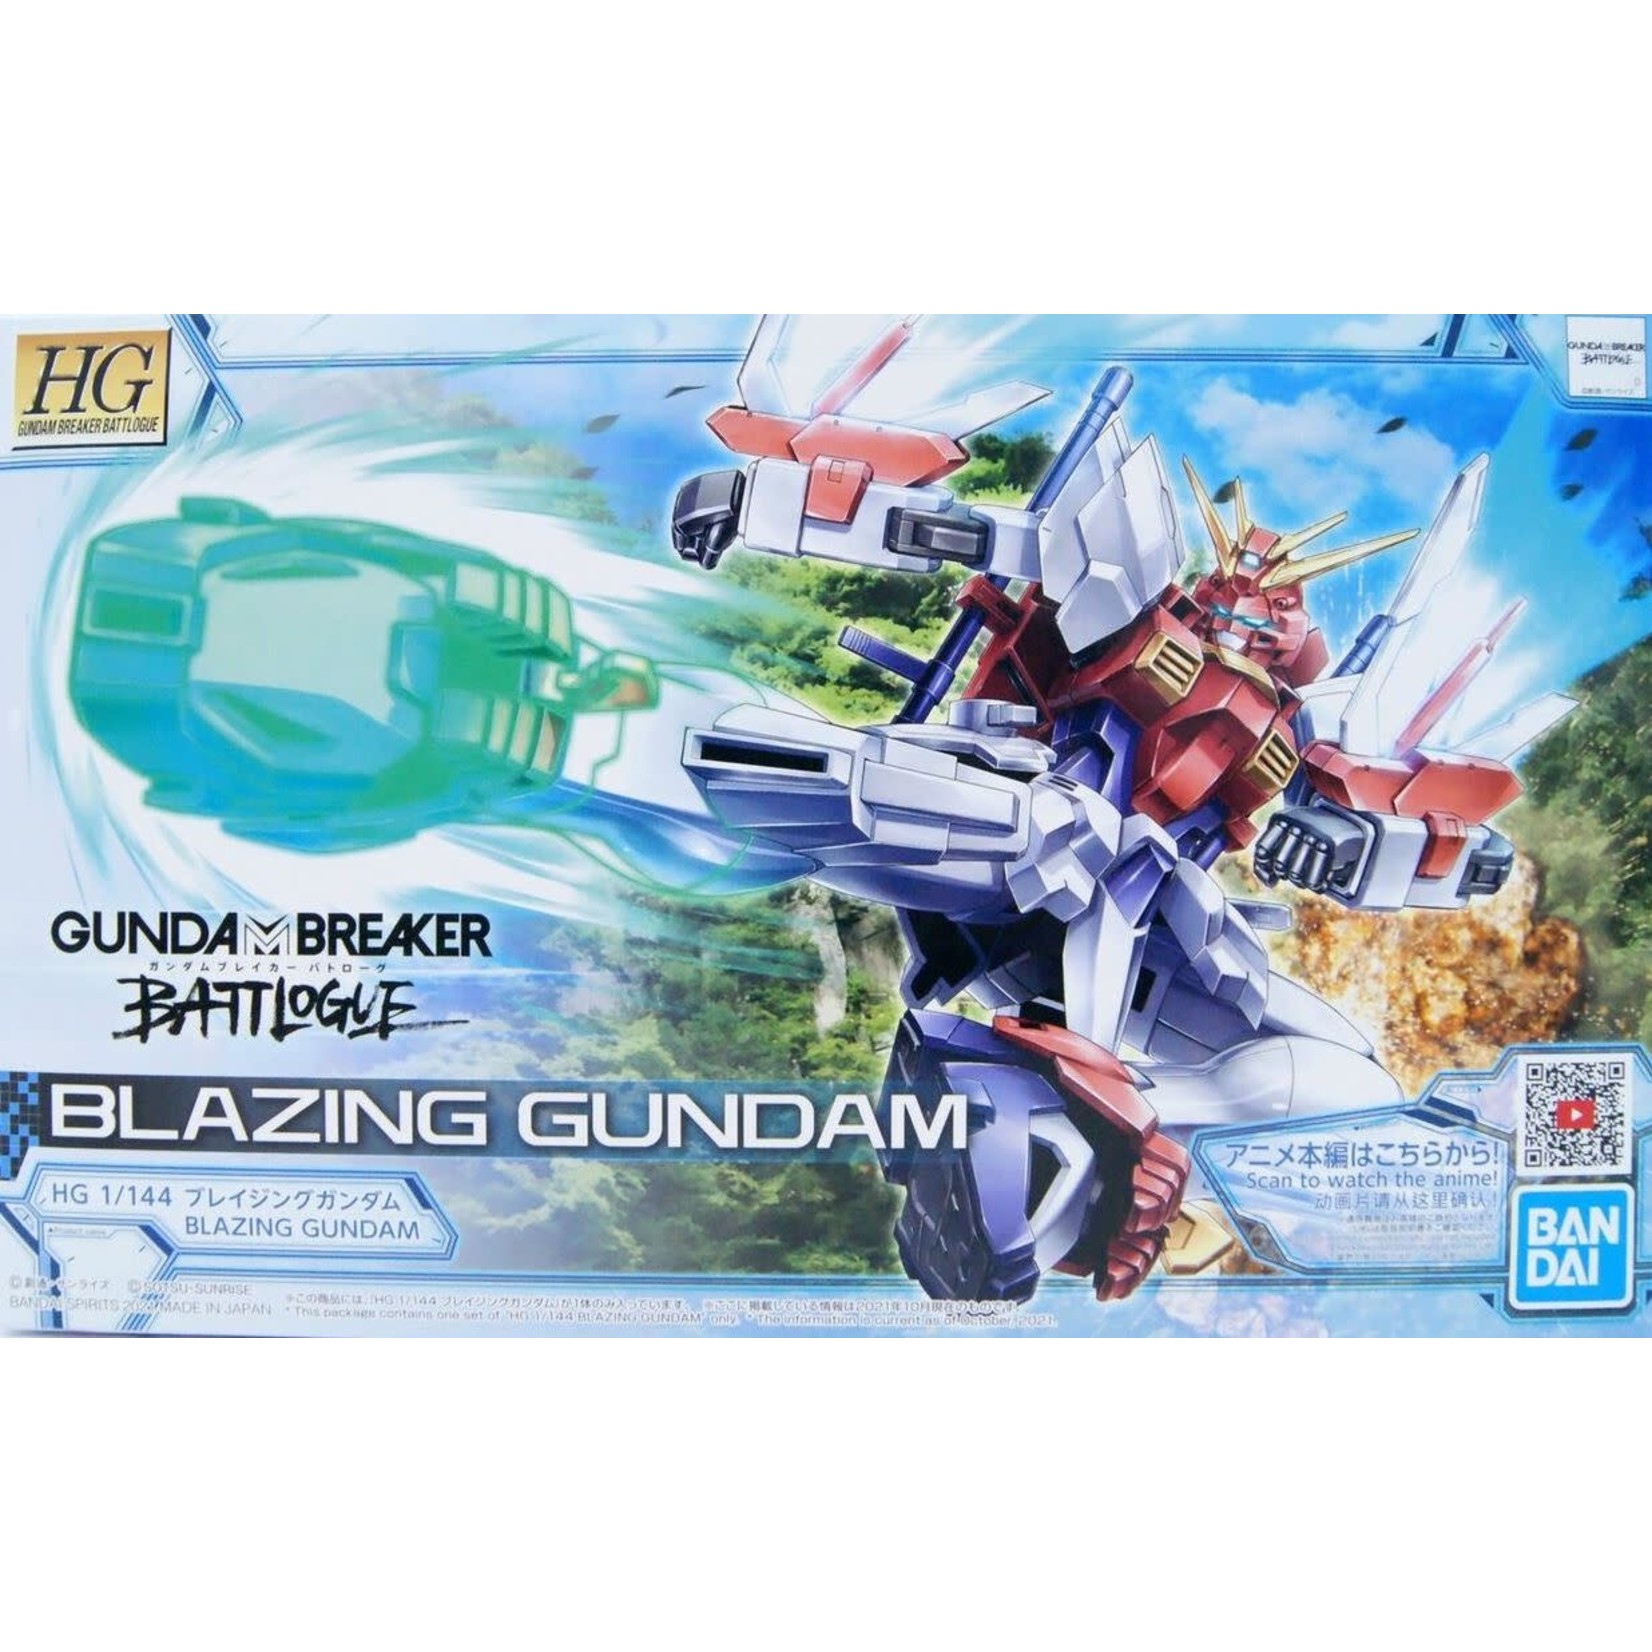 Bandai Bandai 2555019 HG Blazing Gundam "Gundam Breaker Battlogue"